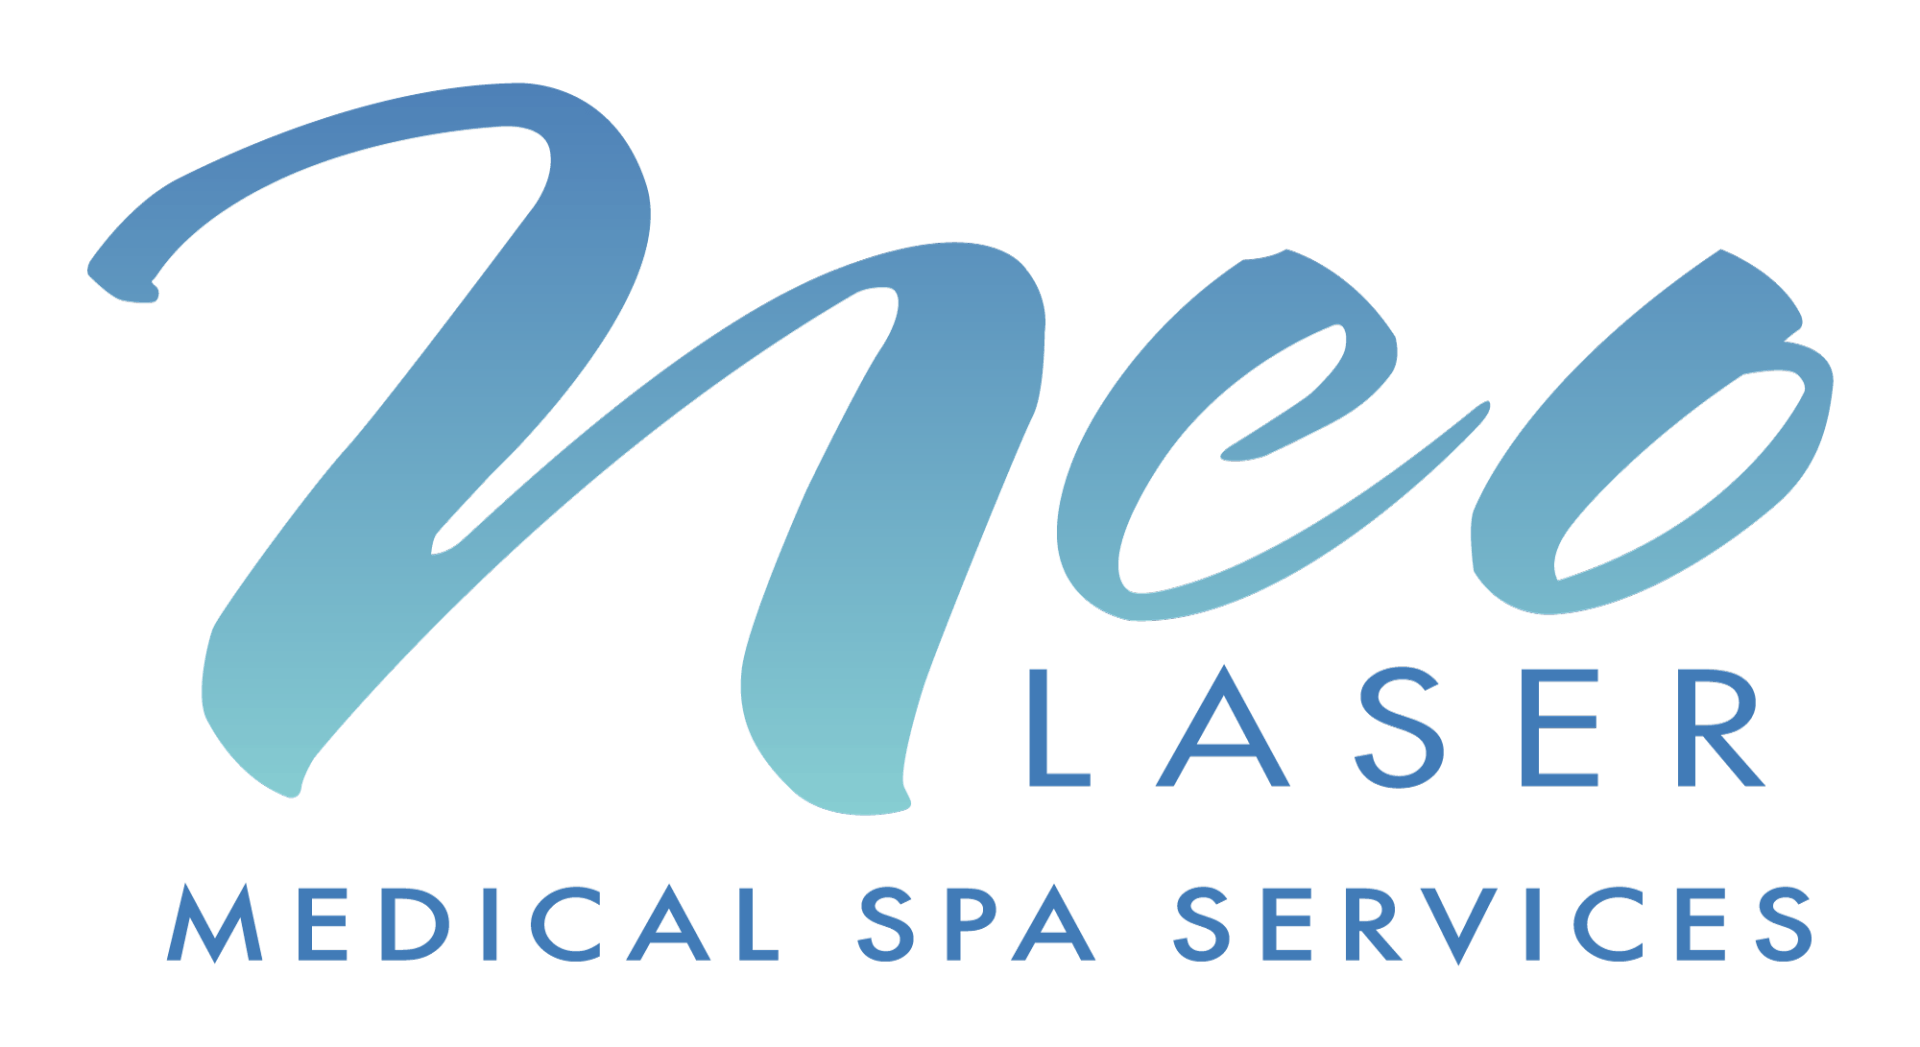 Neo Laser Medical Spa